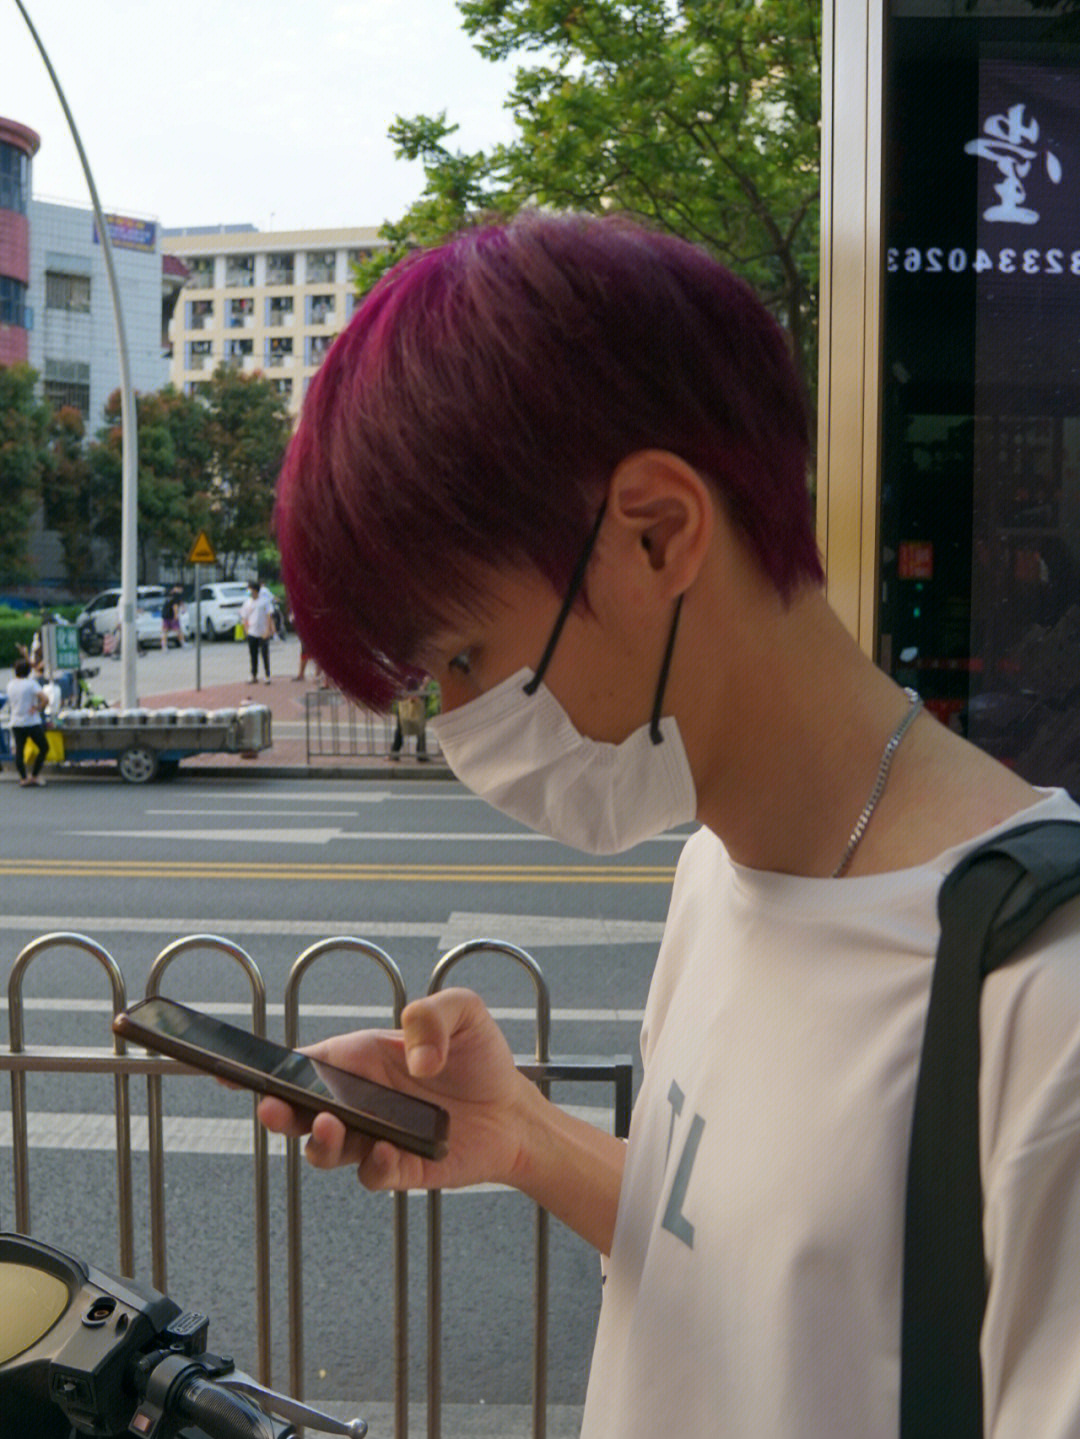 紫红色头发图片男生图片